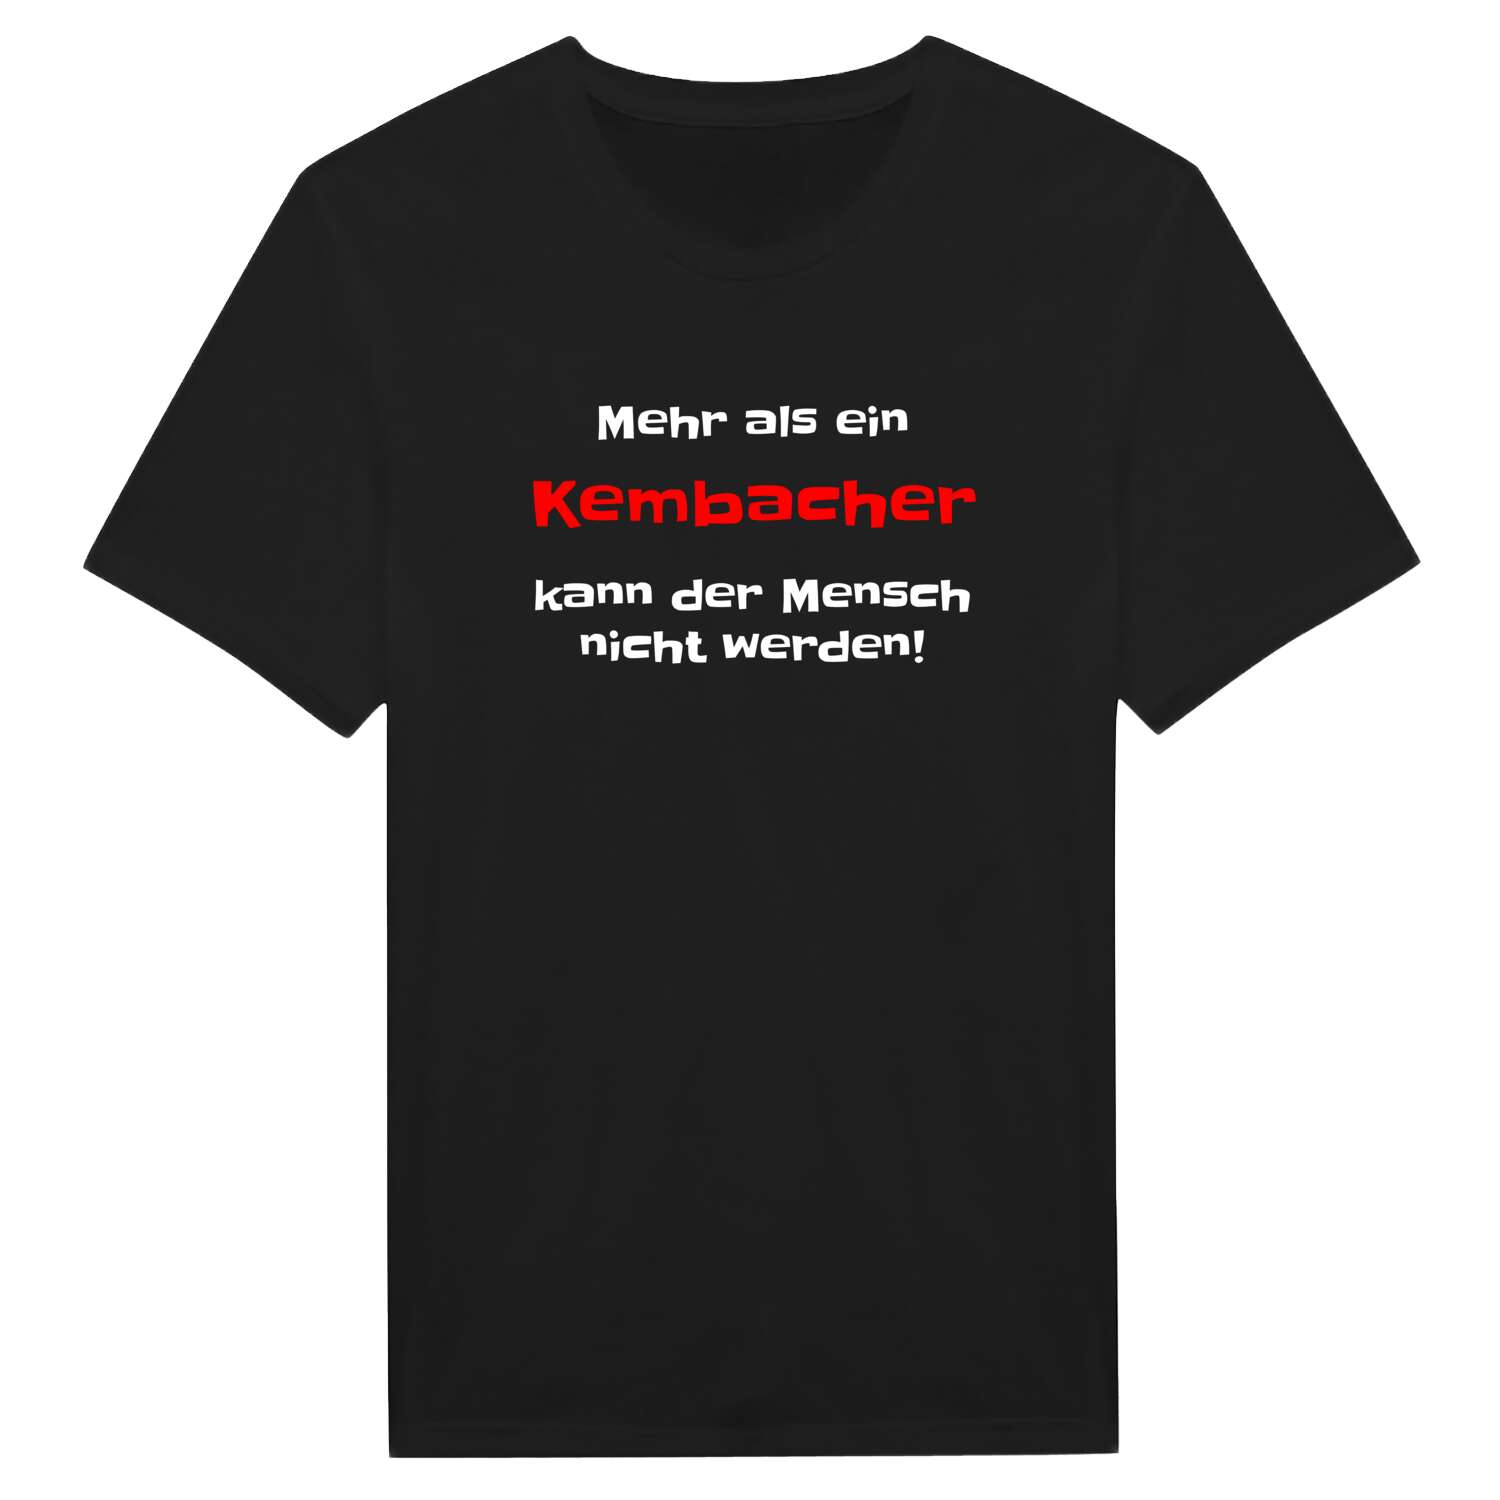 Kembach T-Shirt »Mehr als ein«